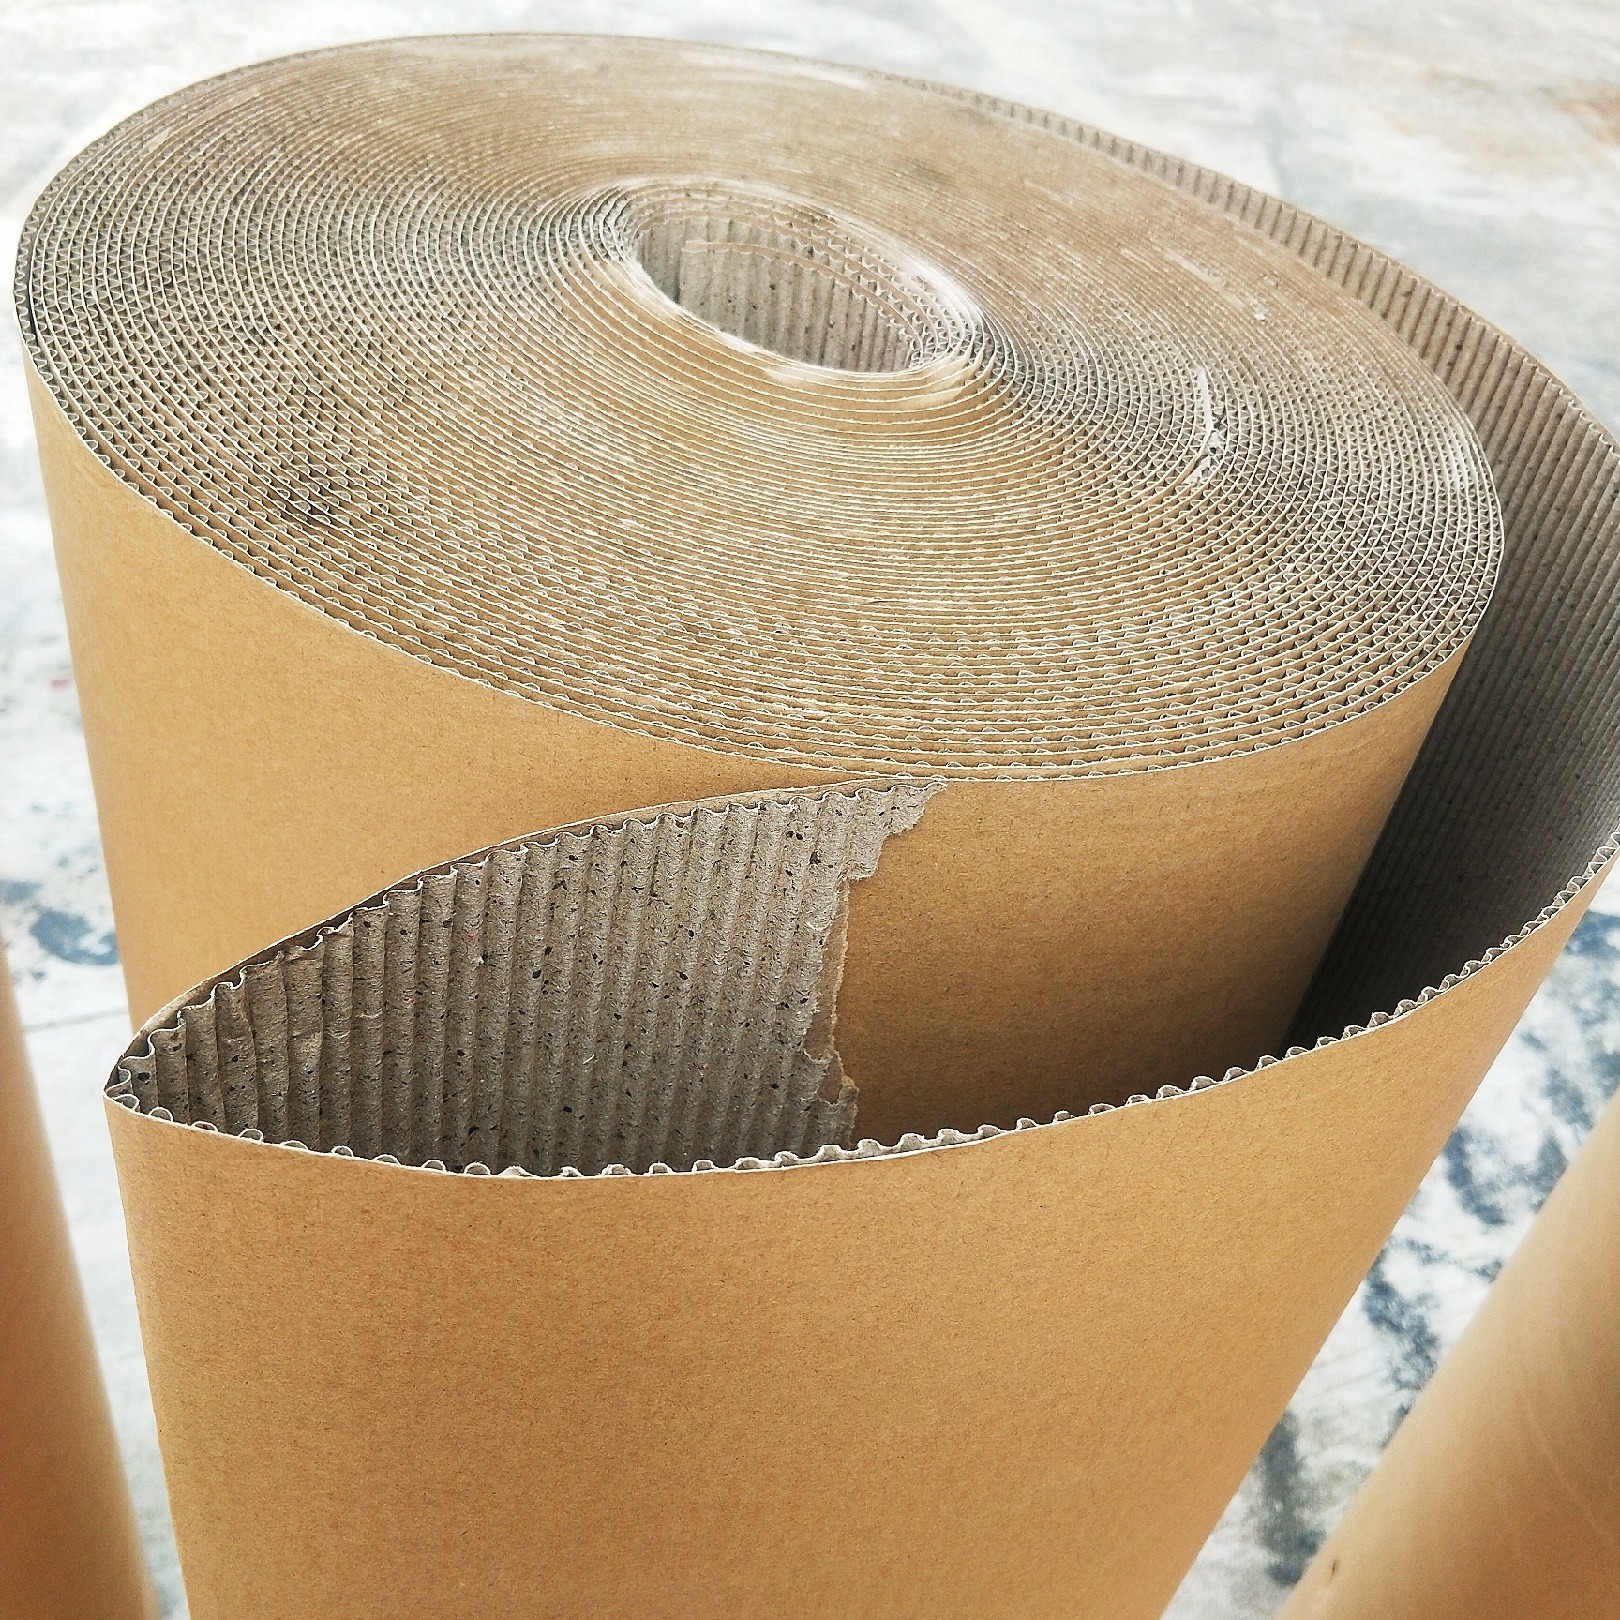 广州纸皮厂家 印字纸皮 打包纸皮 包装纸皮 全屋定制家具包装纸皮厂家图片